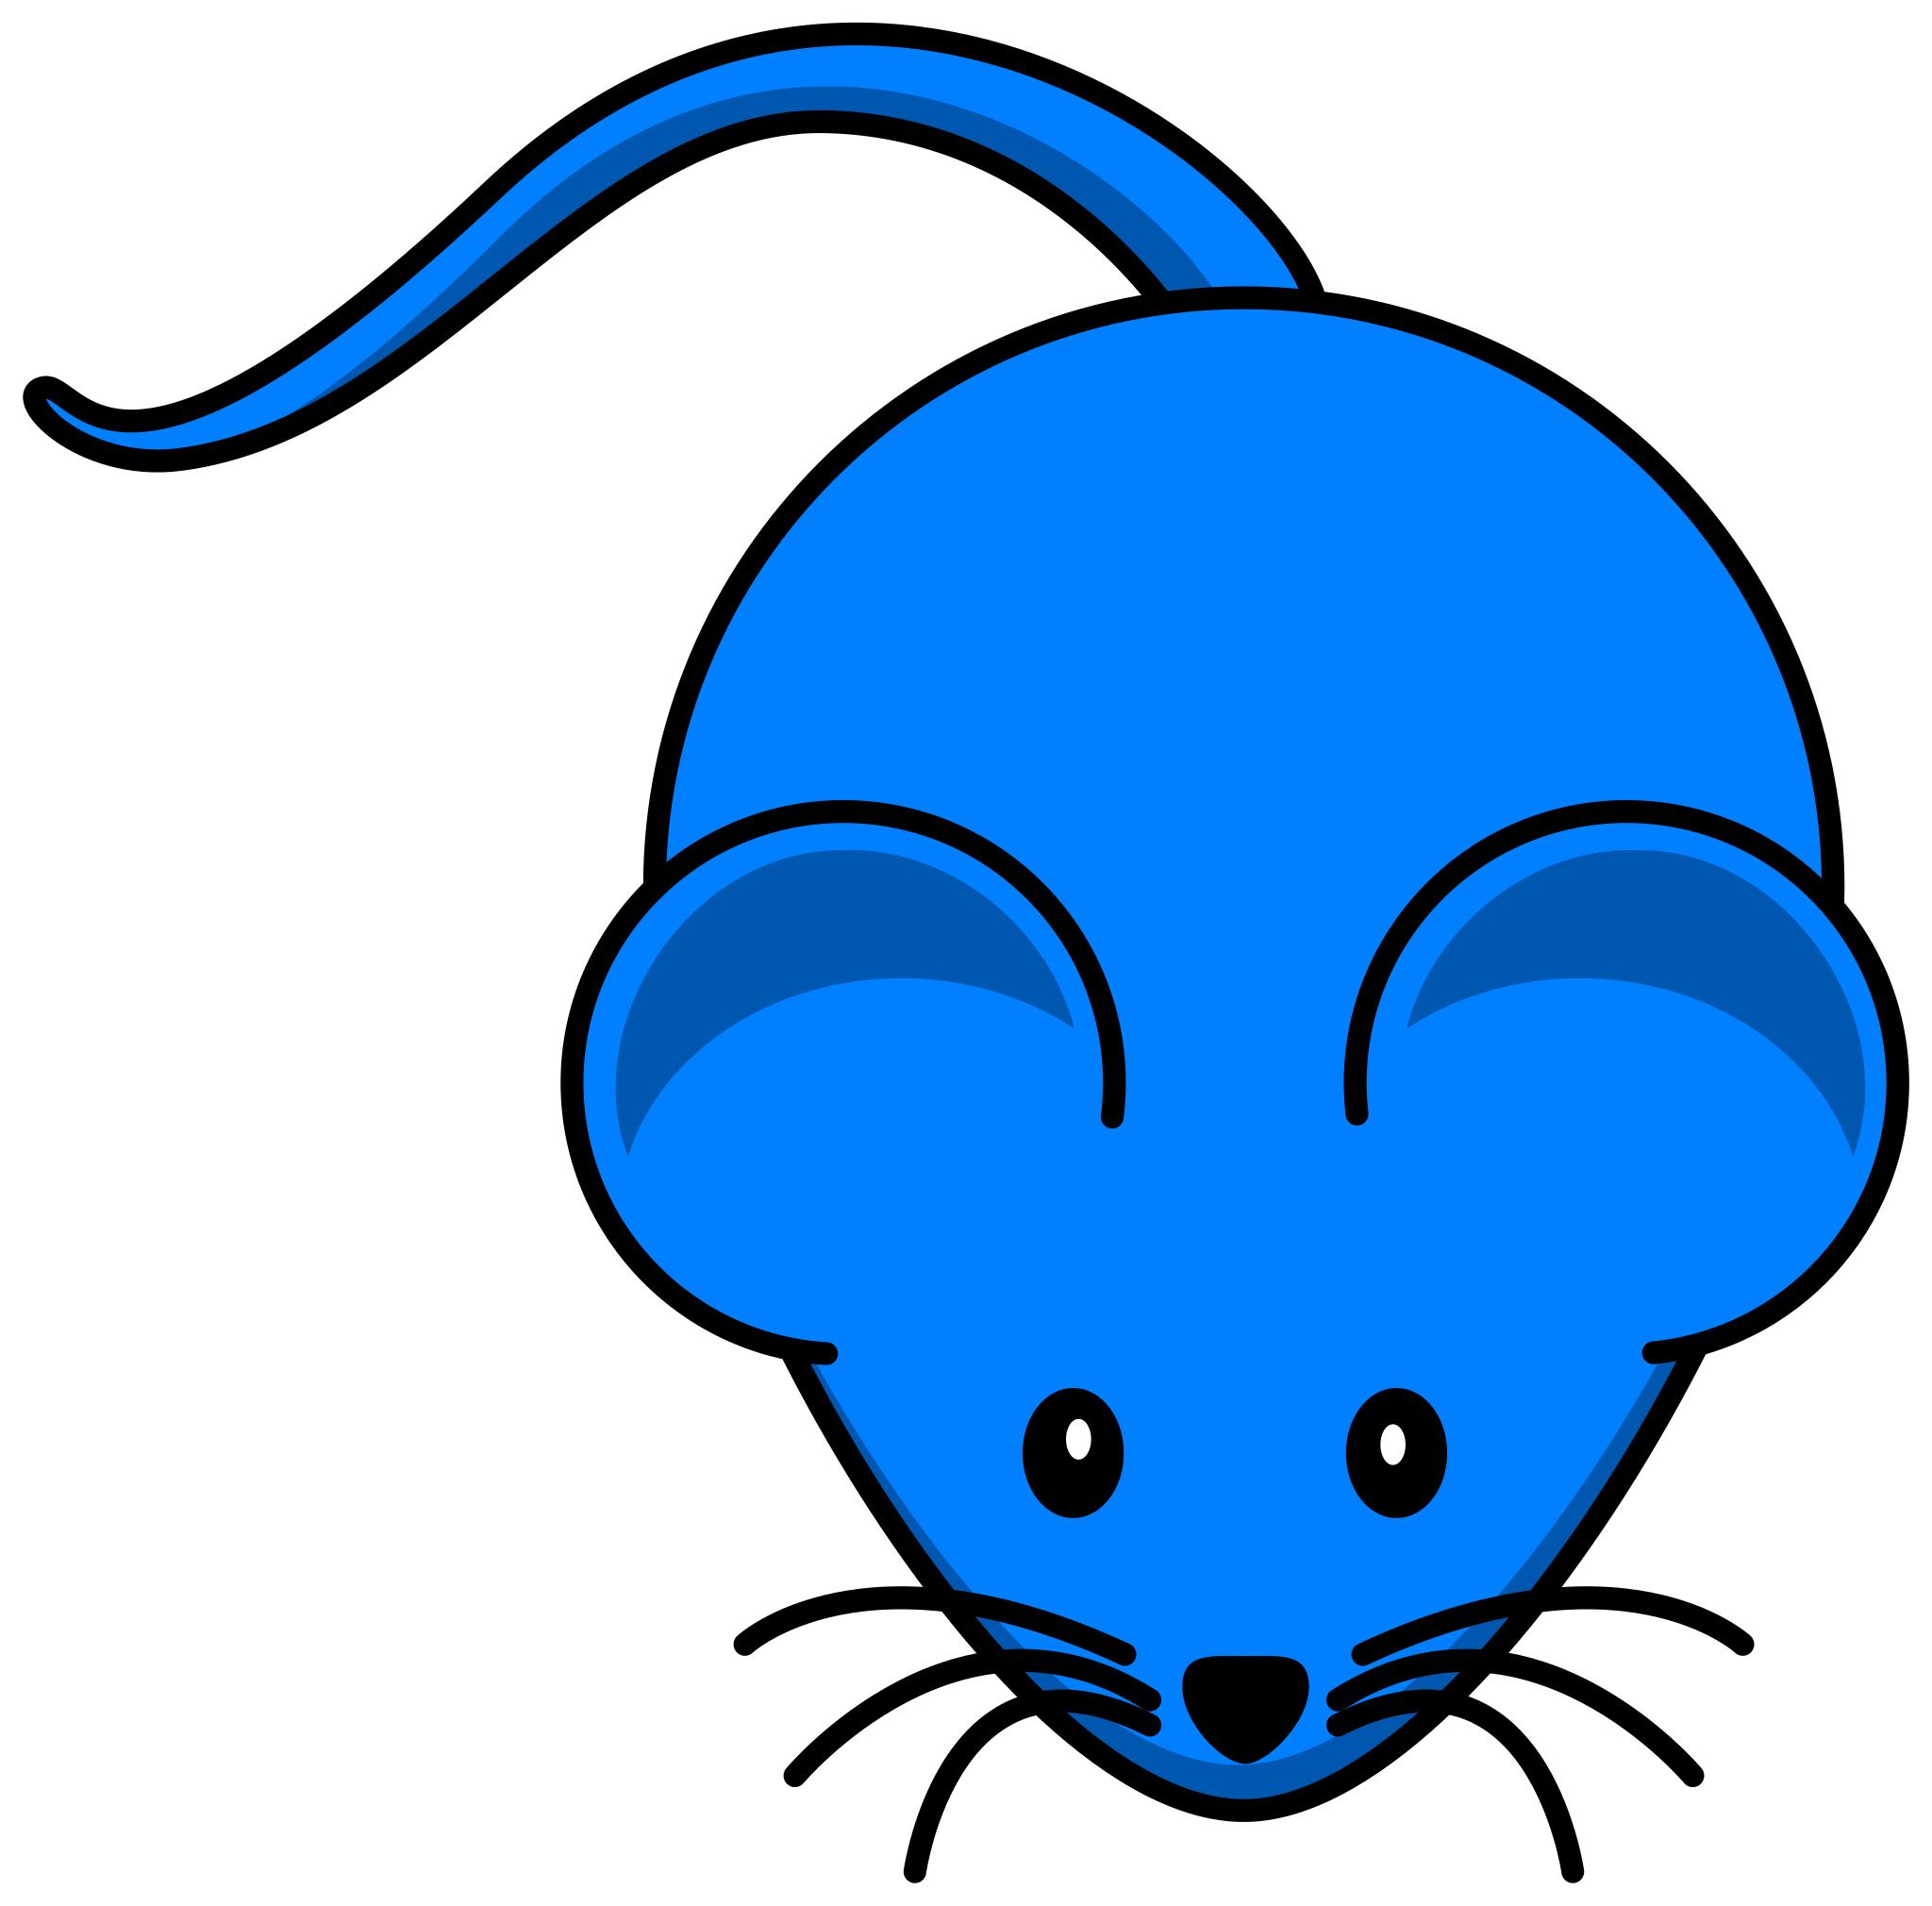 Голубая мышь